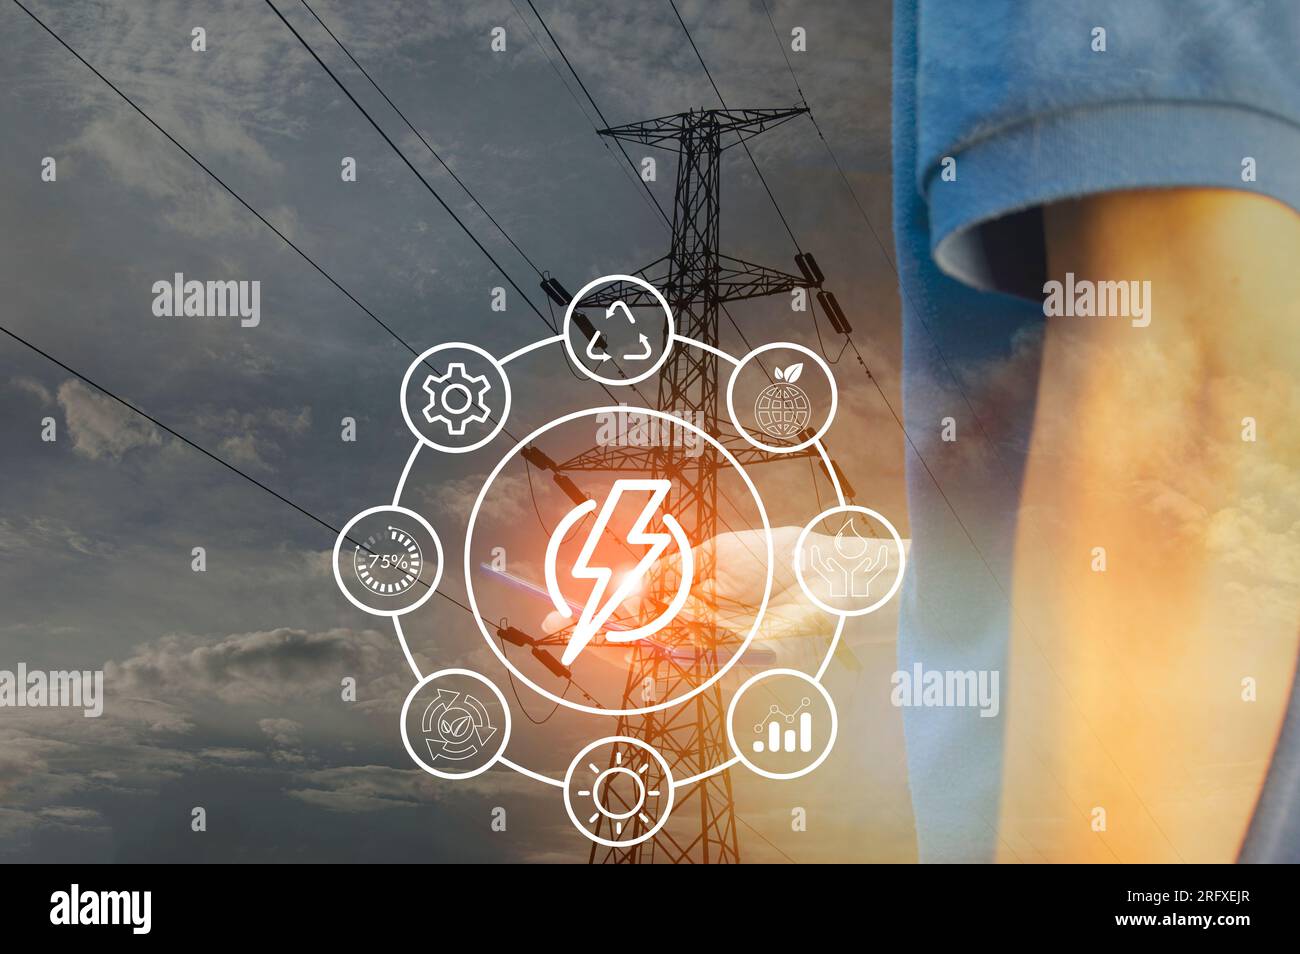 Das Konzept des Energiemanagements und des Energiemanagements für eine angemessene Nutzung. Stockfoto